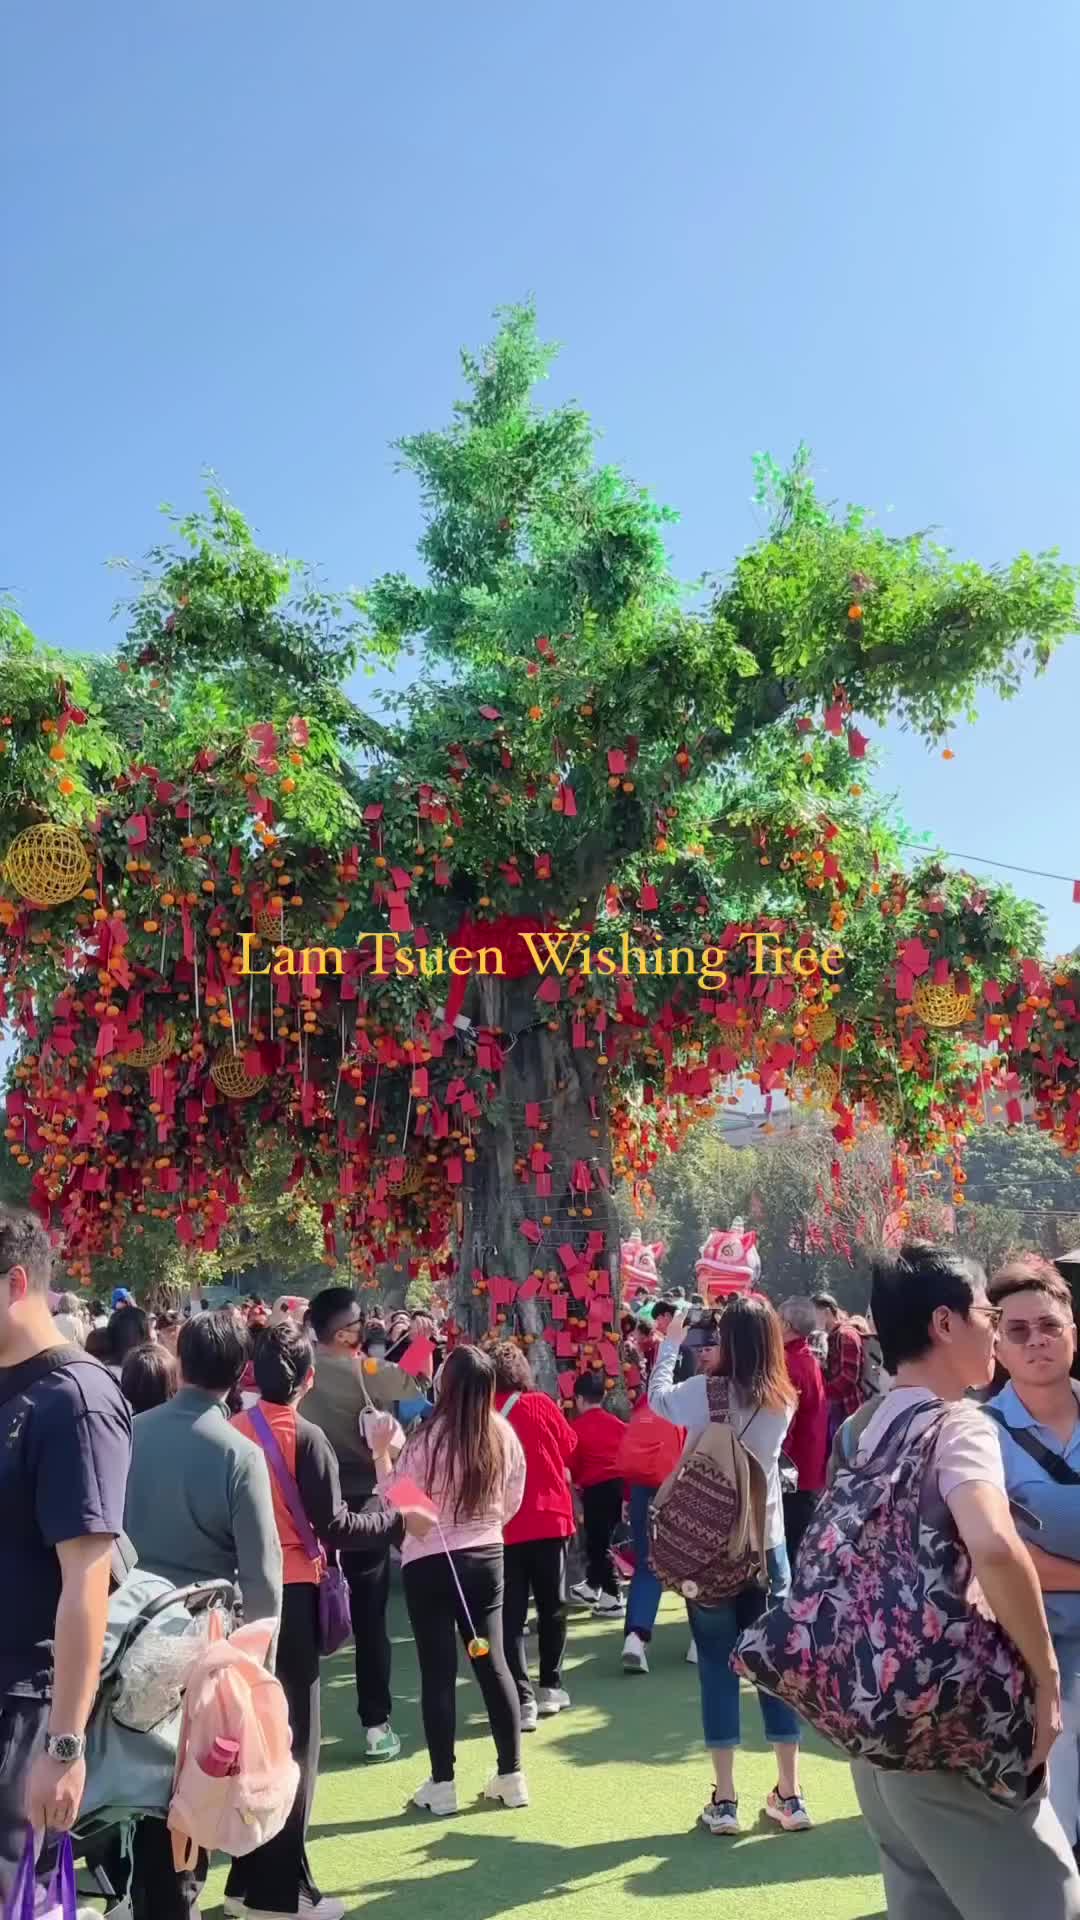 Lam Tsuen Wishing Tree: New Year Traditions in Hong Kong